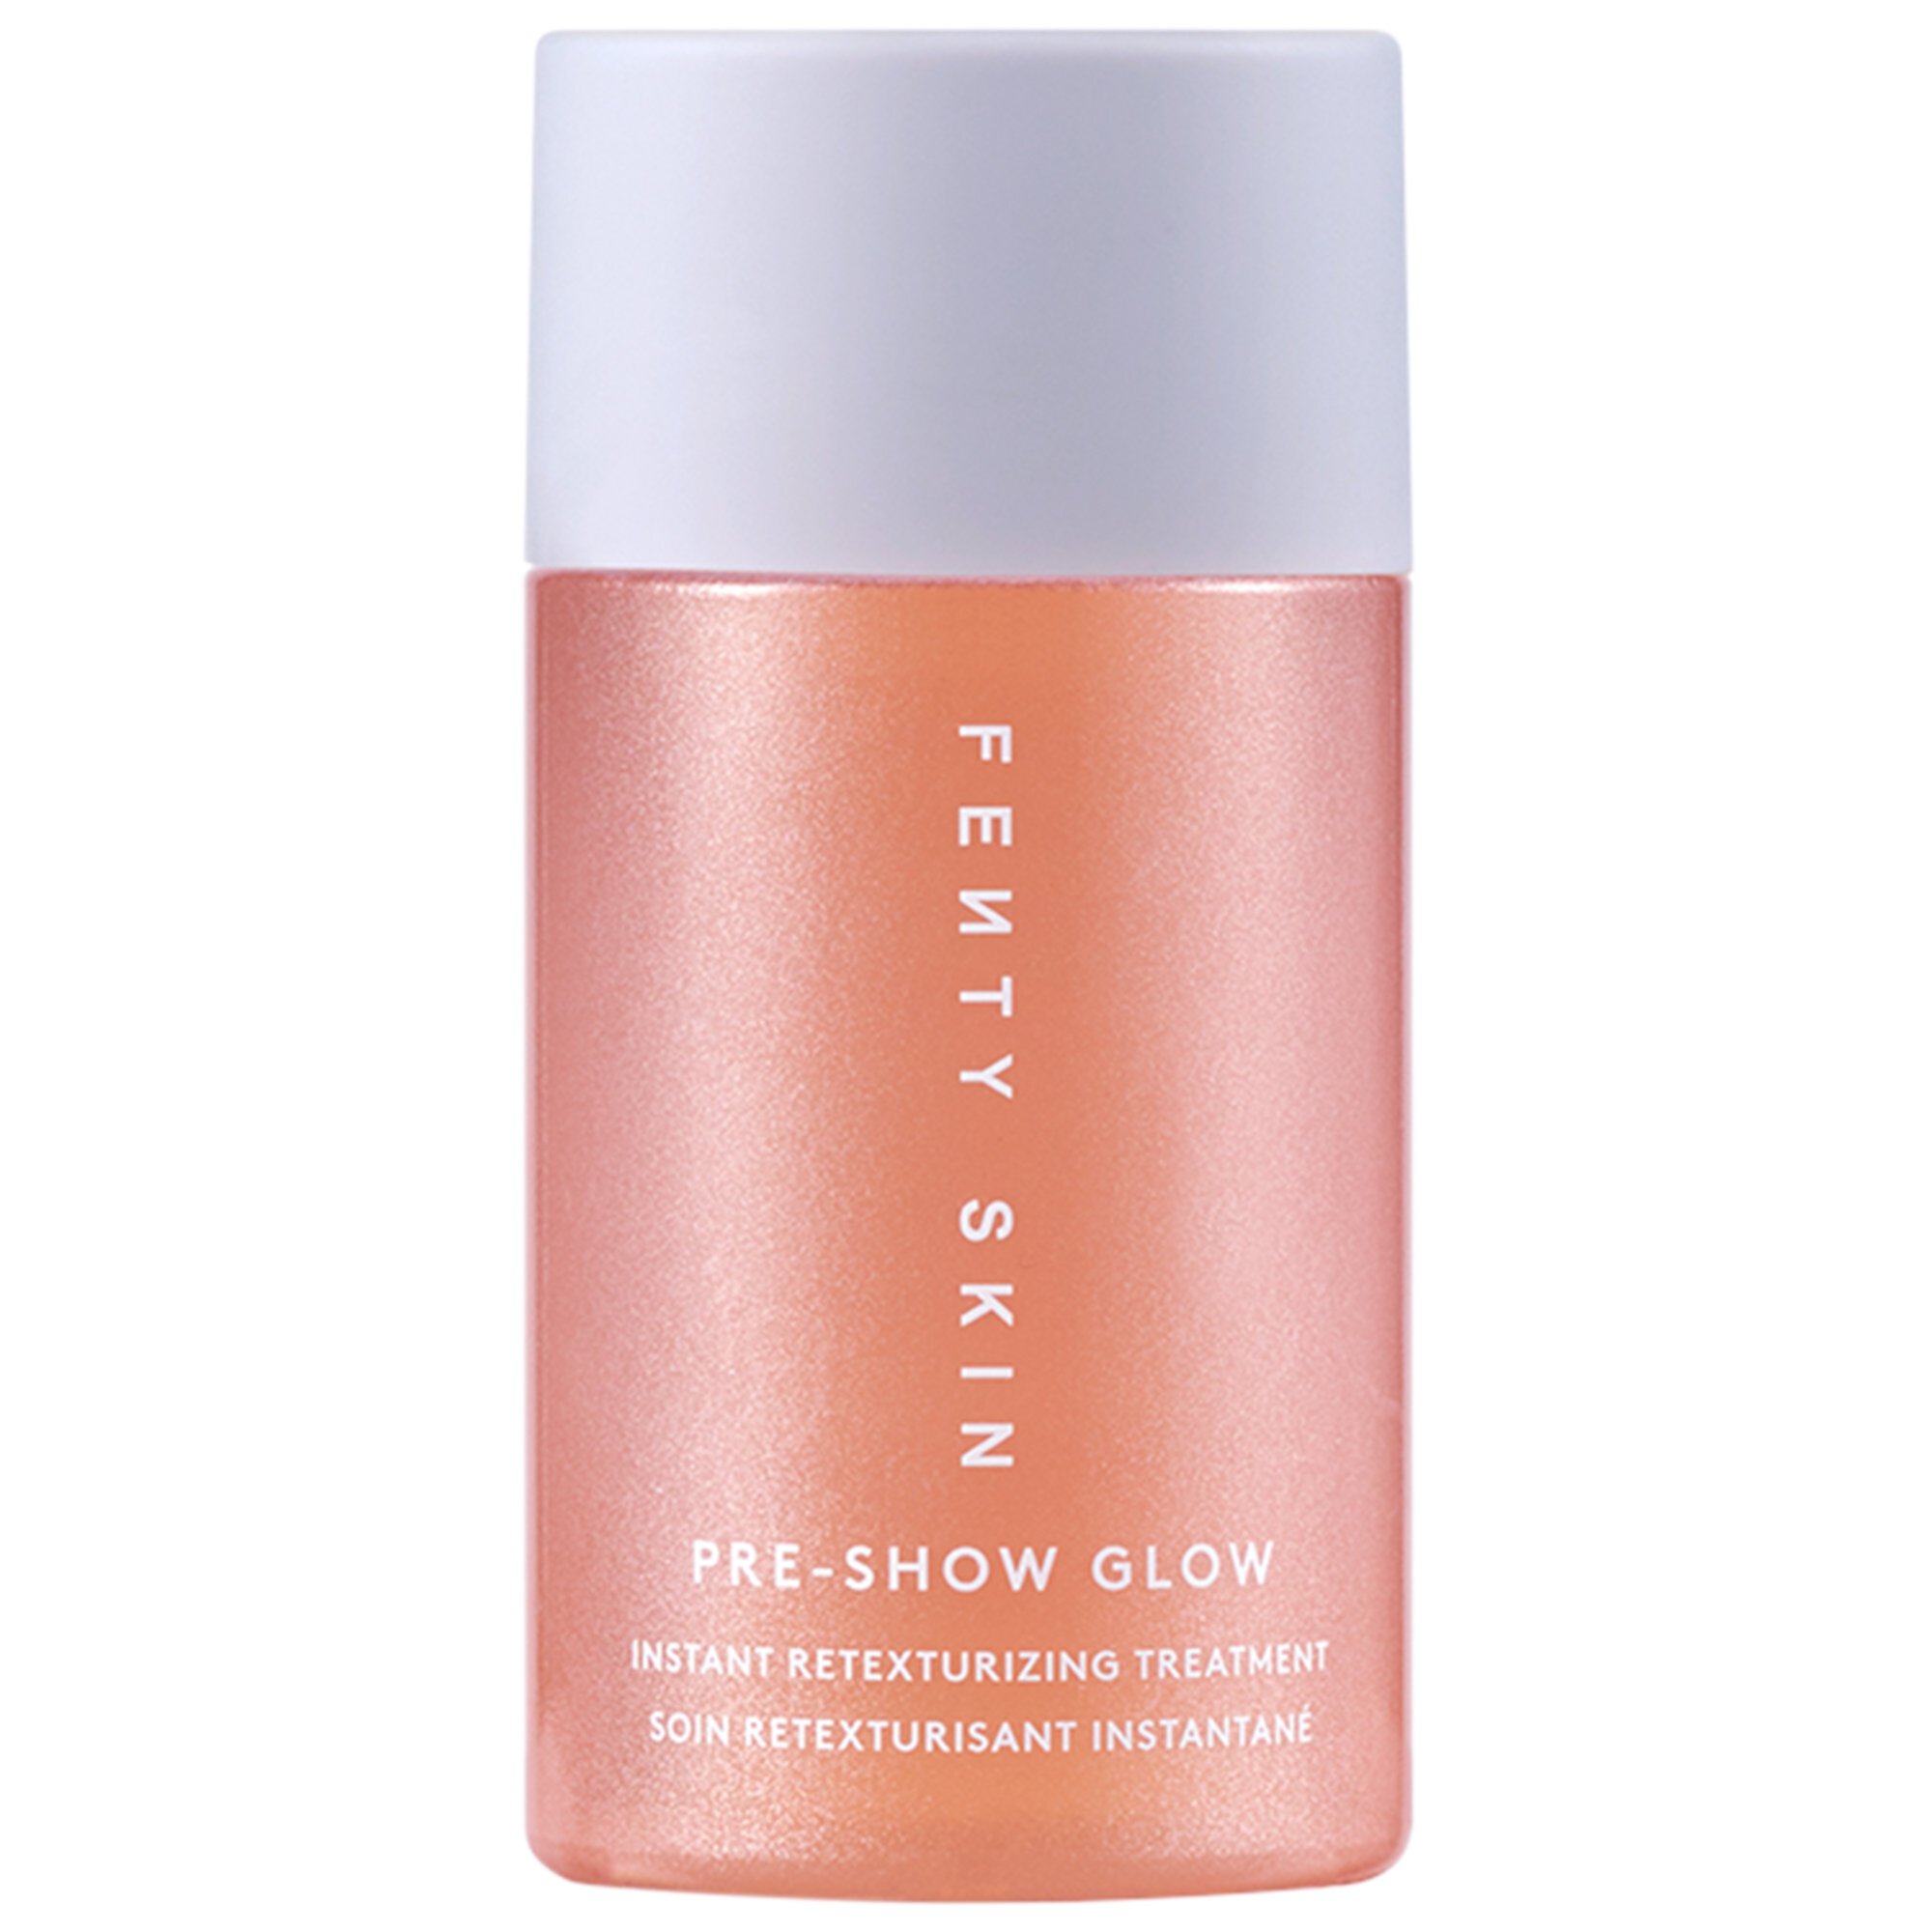 Pre-Show Glow Многоразовый Мгновенно восстанавливающий текстуру уход с 10% AHA Fenty Skin